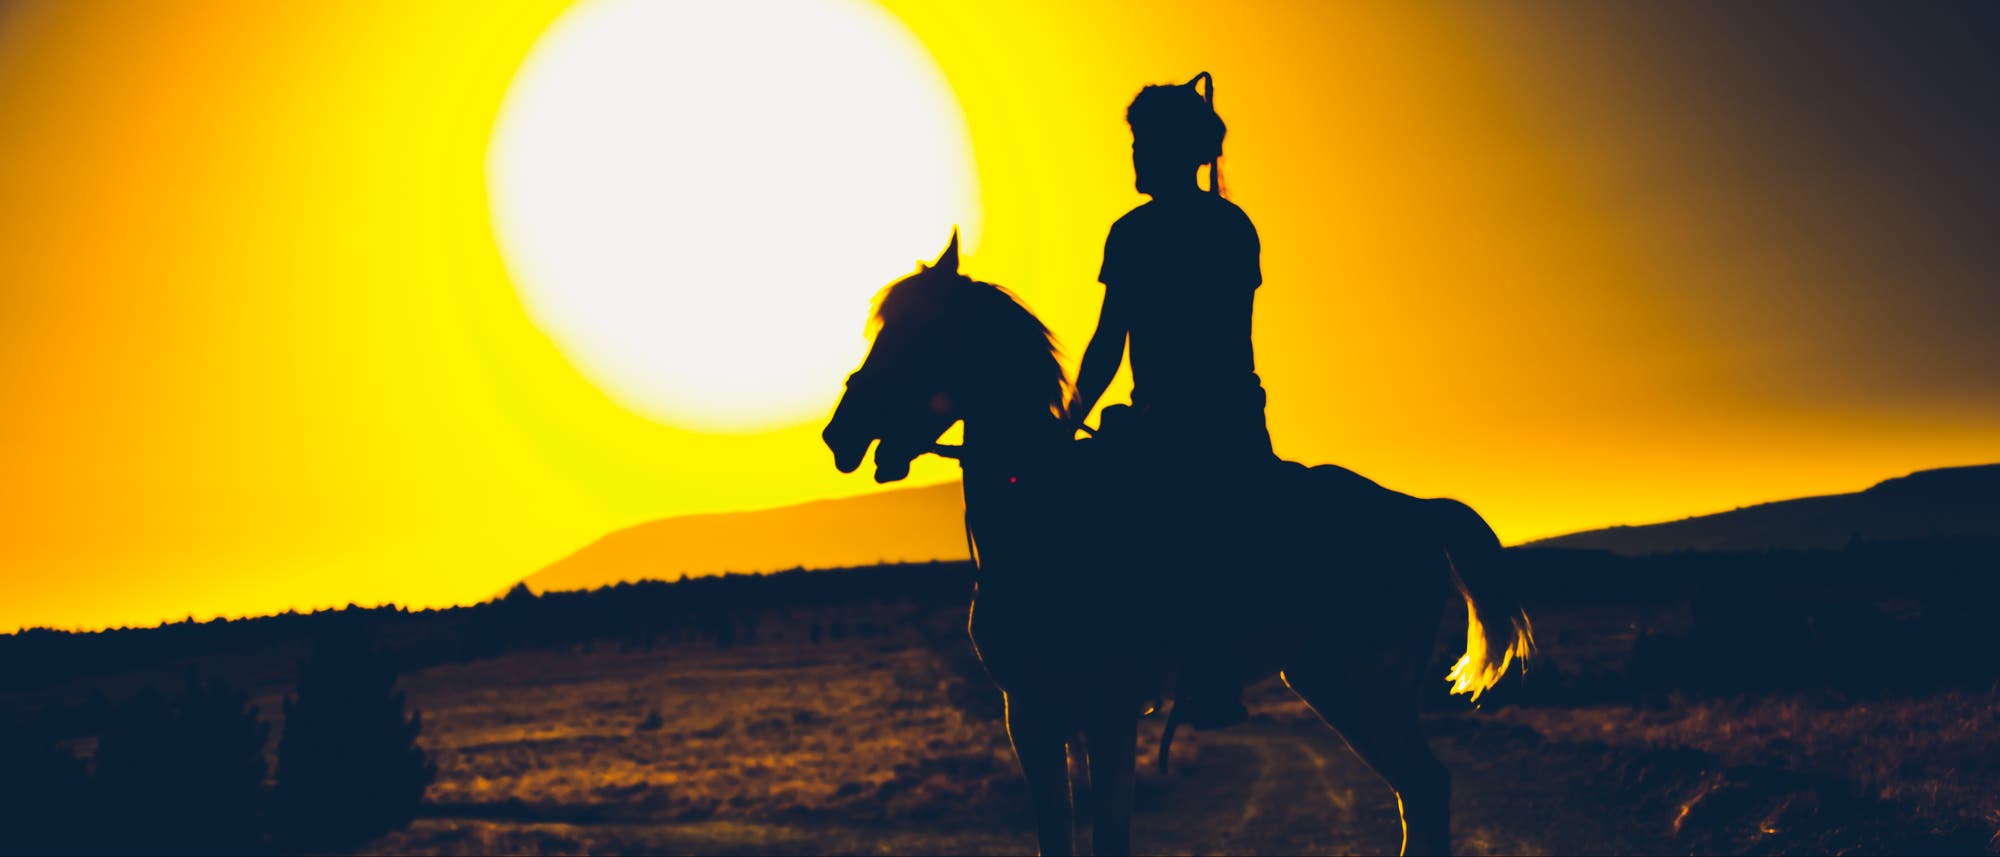 Krieger zu Pferd im Sonnenuntergang (Symbolbild)